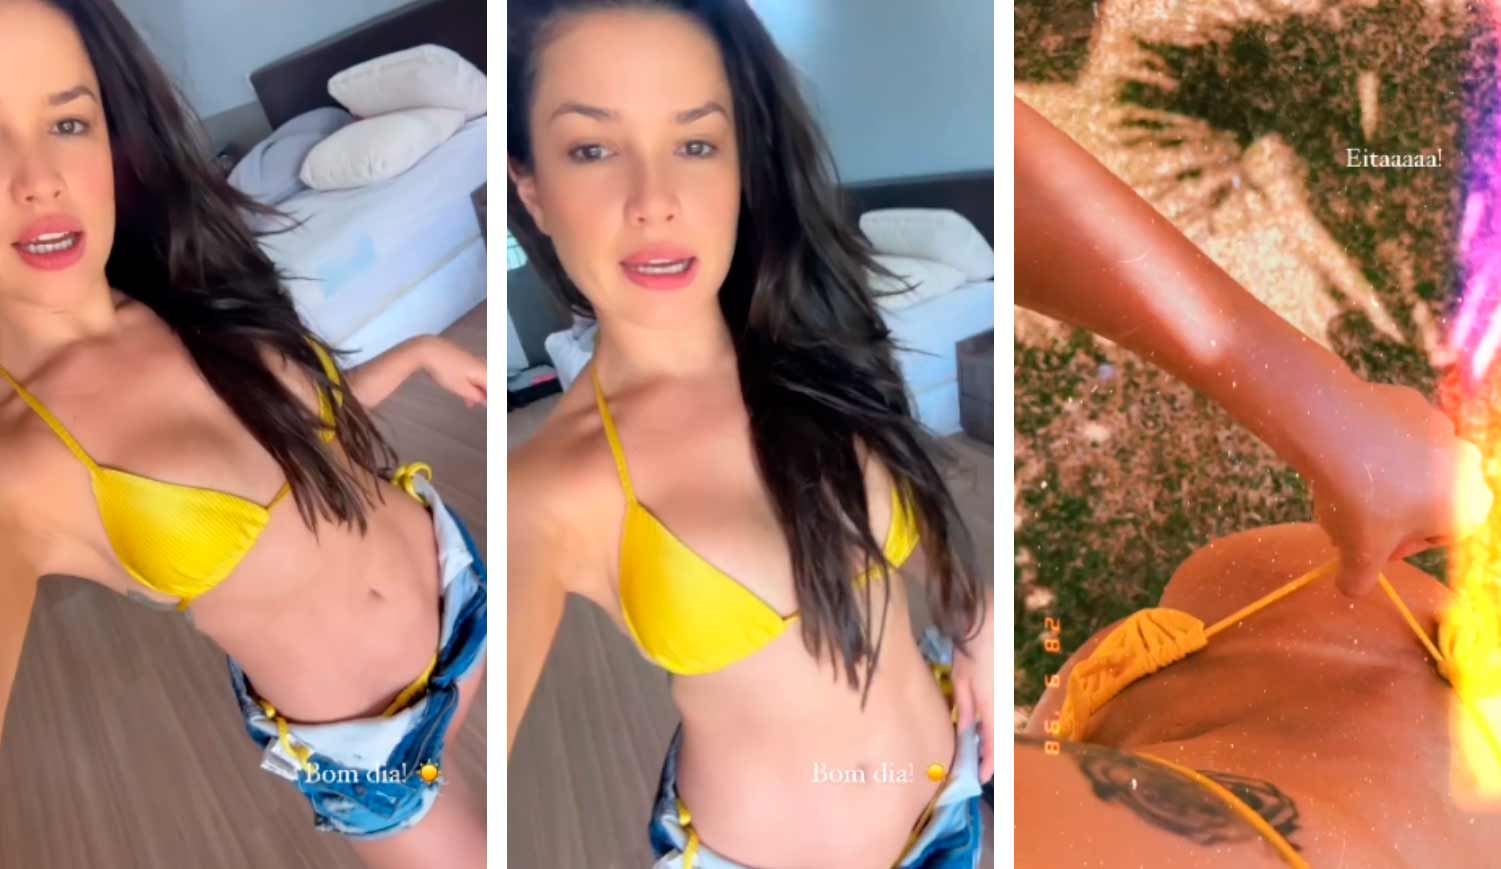 VÍDEO: Juliette baixa calcinha de biquíni amarelo e mostra marquina de sol. Foto: Reprodução Instagram